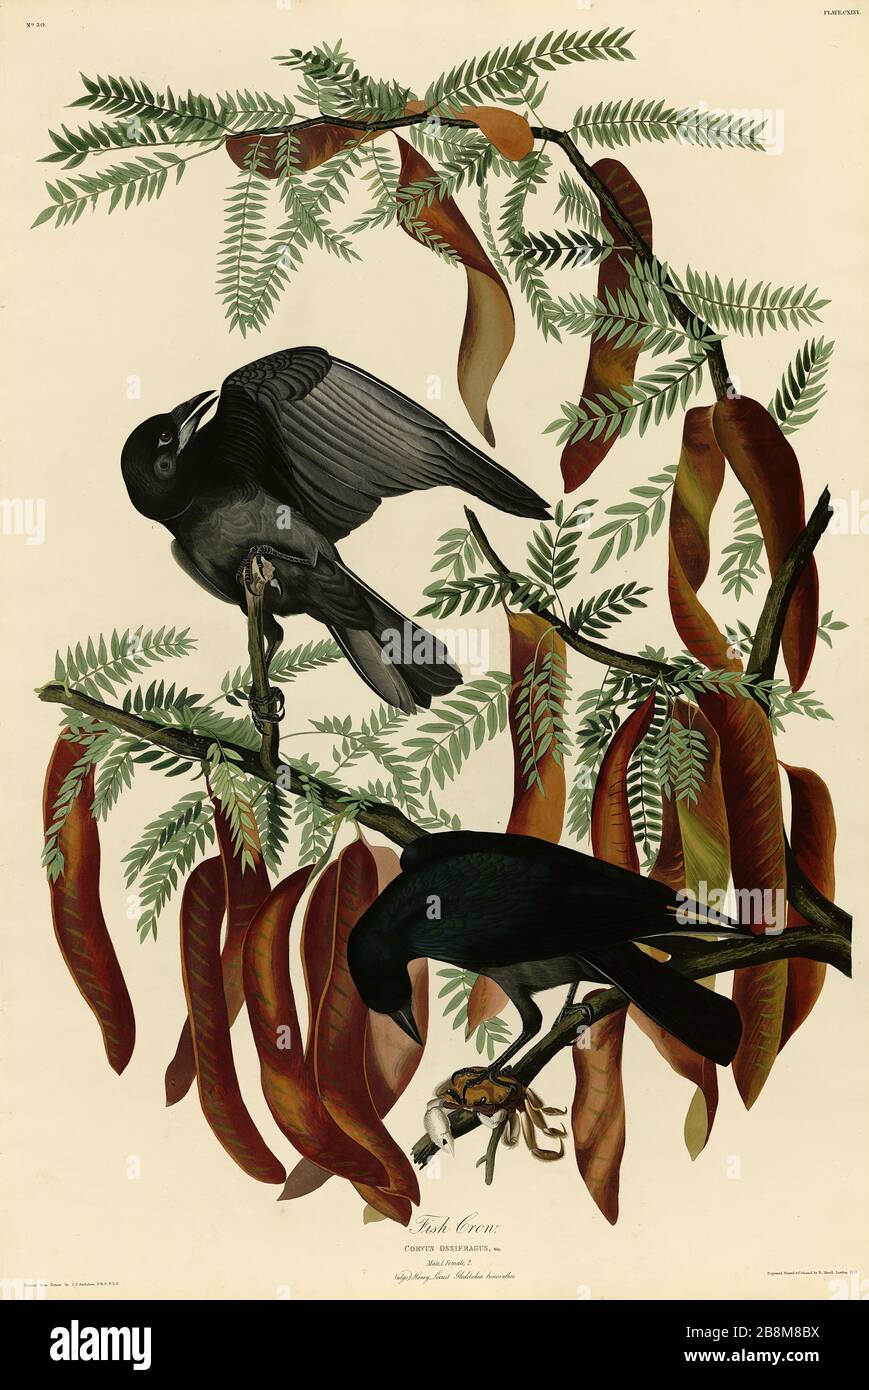 Platte 146 Fish Crow, von The Birds of America Folio (187-187) von John James Audubon - sehr hochauflösendes und qualitativ hochwertiges bearbeitetes Bild Stockfoto